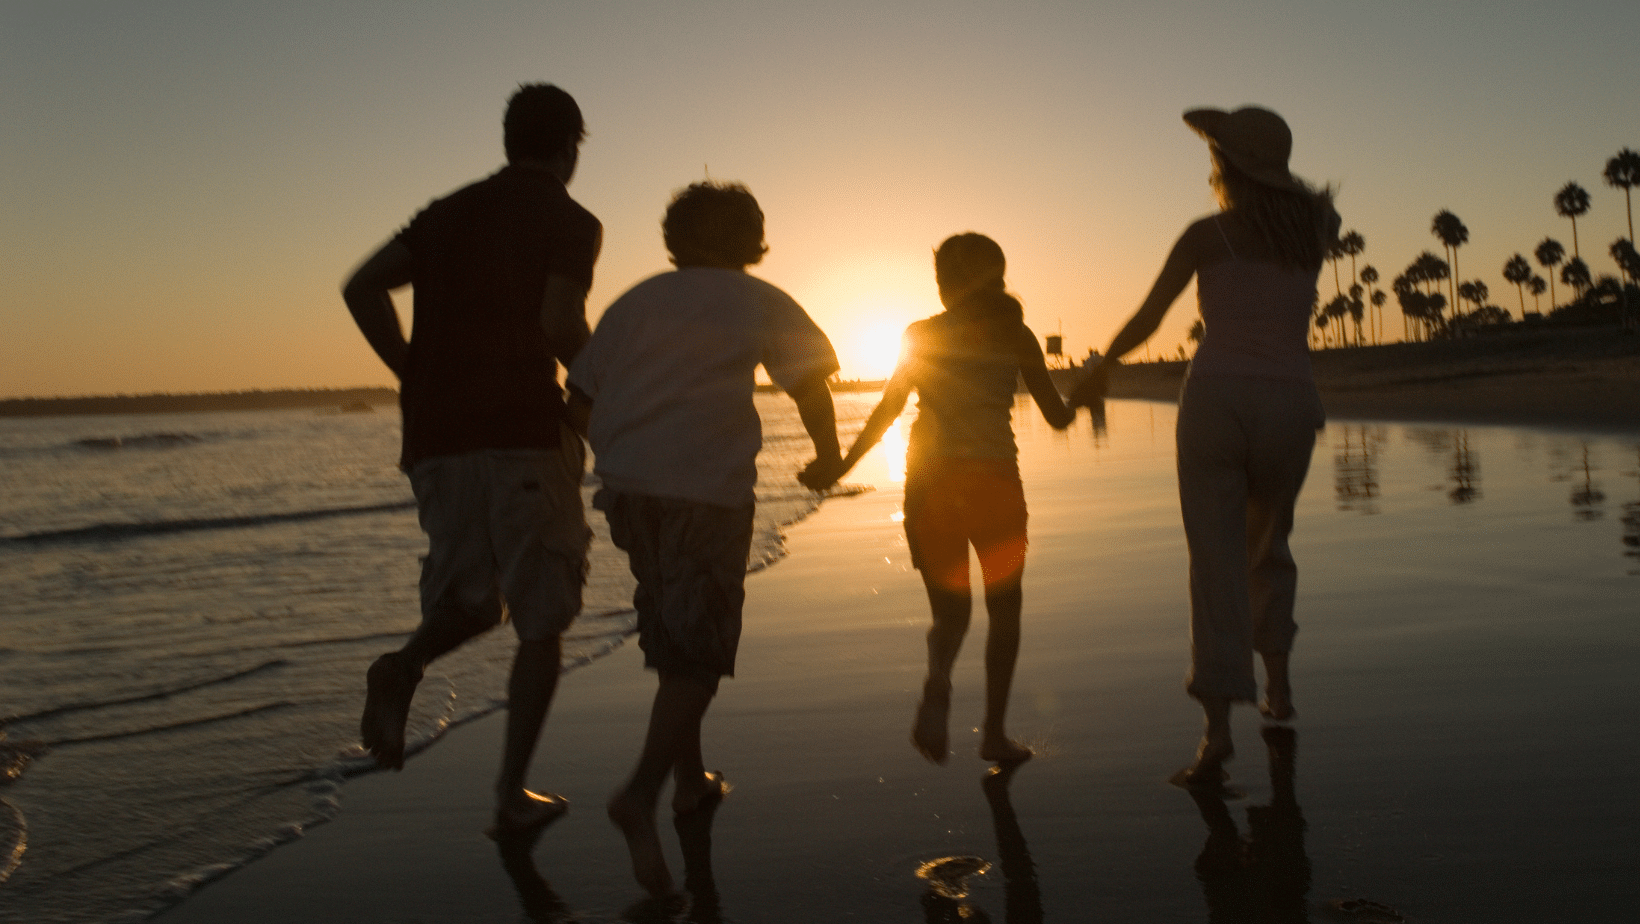 Sunset à la plage en famille quand on s'expatrie en famille à l'Ile Maurice|Témoignage d'Amandine et de sa famille expatriée à l'Ile Maurice|